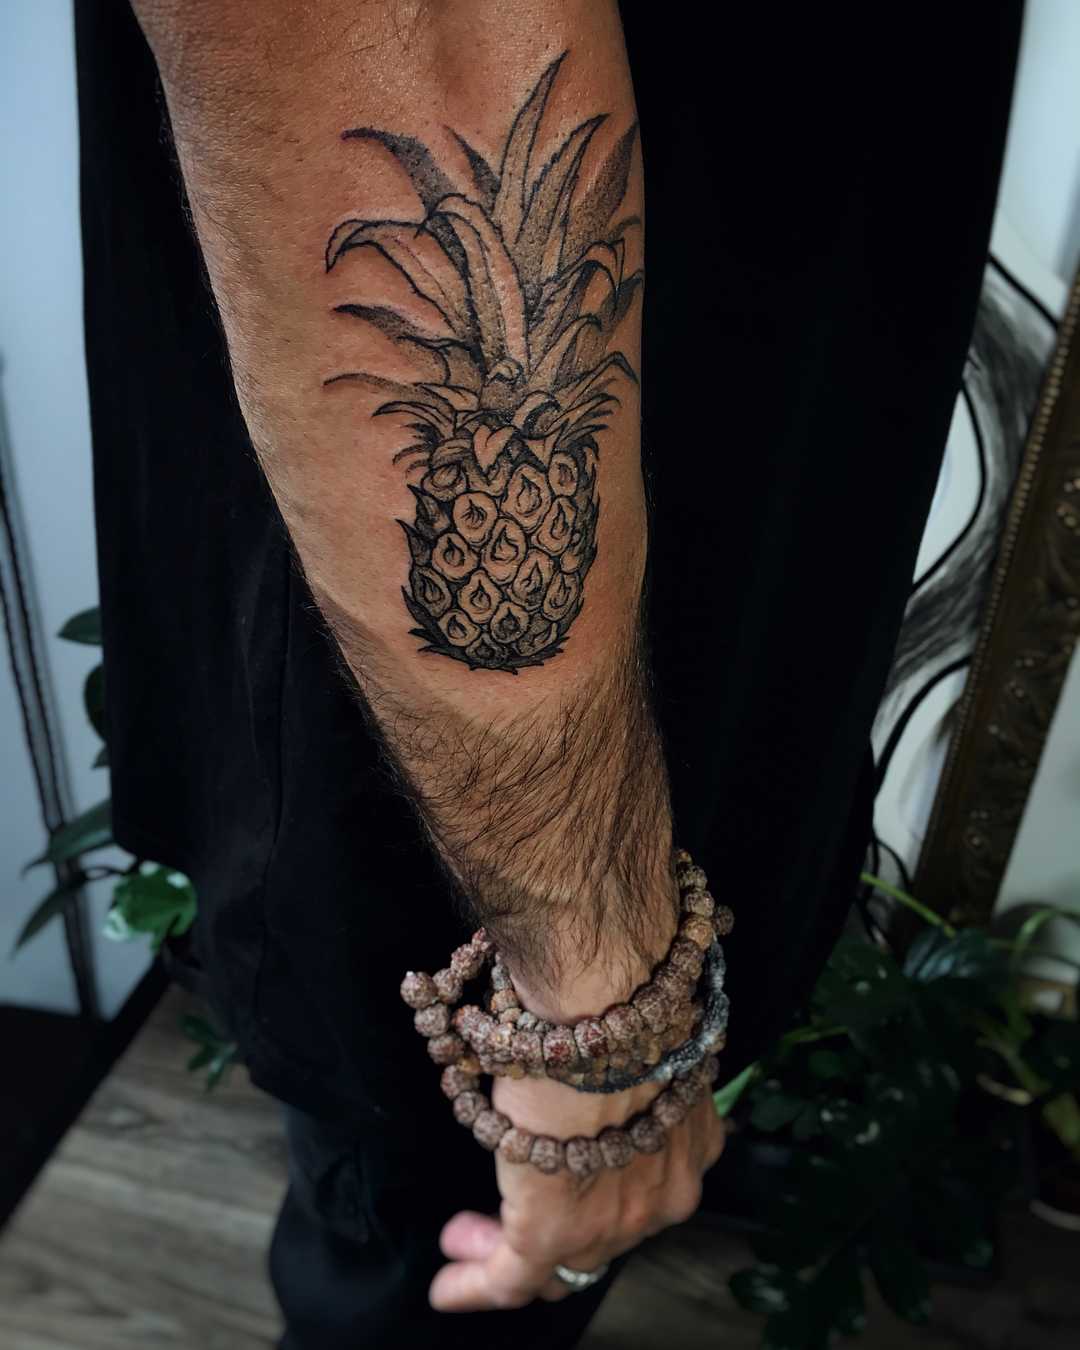 Black pineapple tattoo on the forearm - Tattoogrid.net